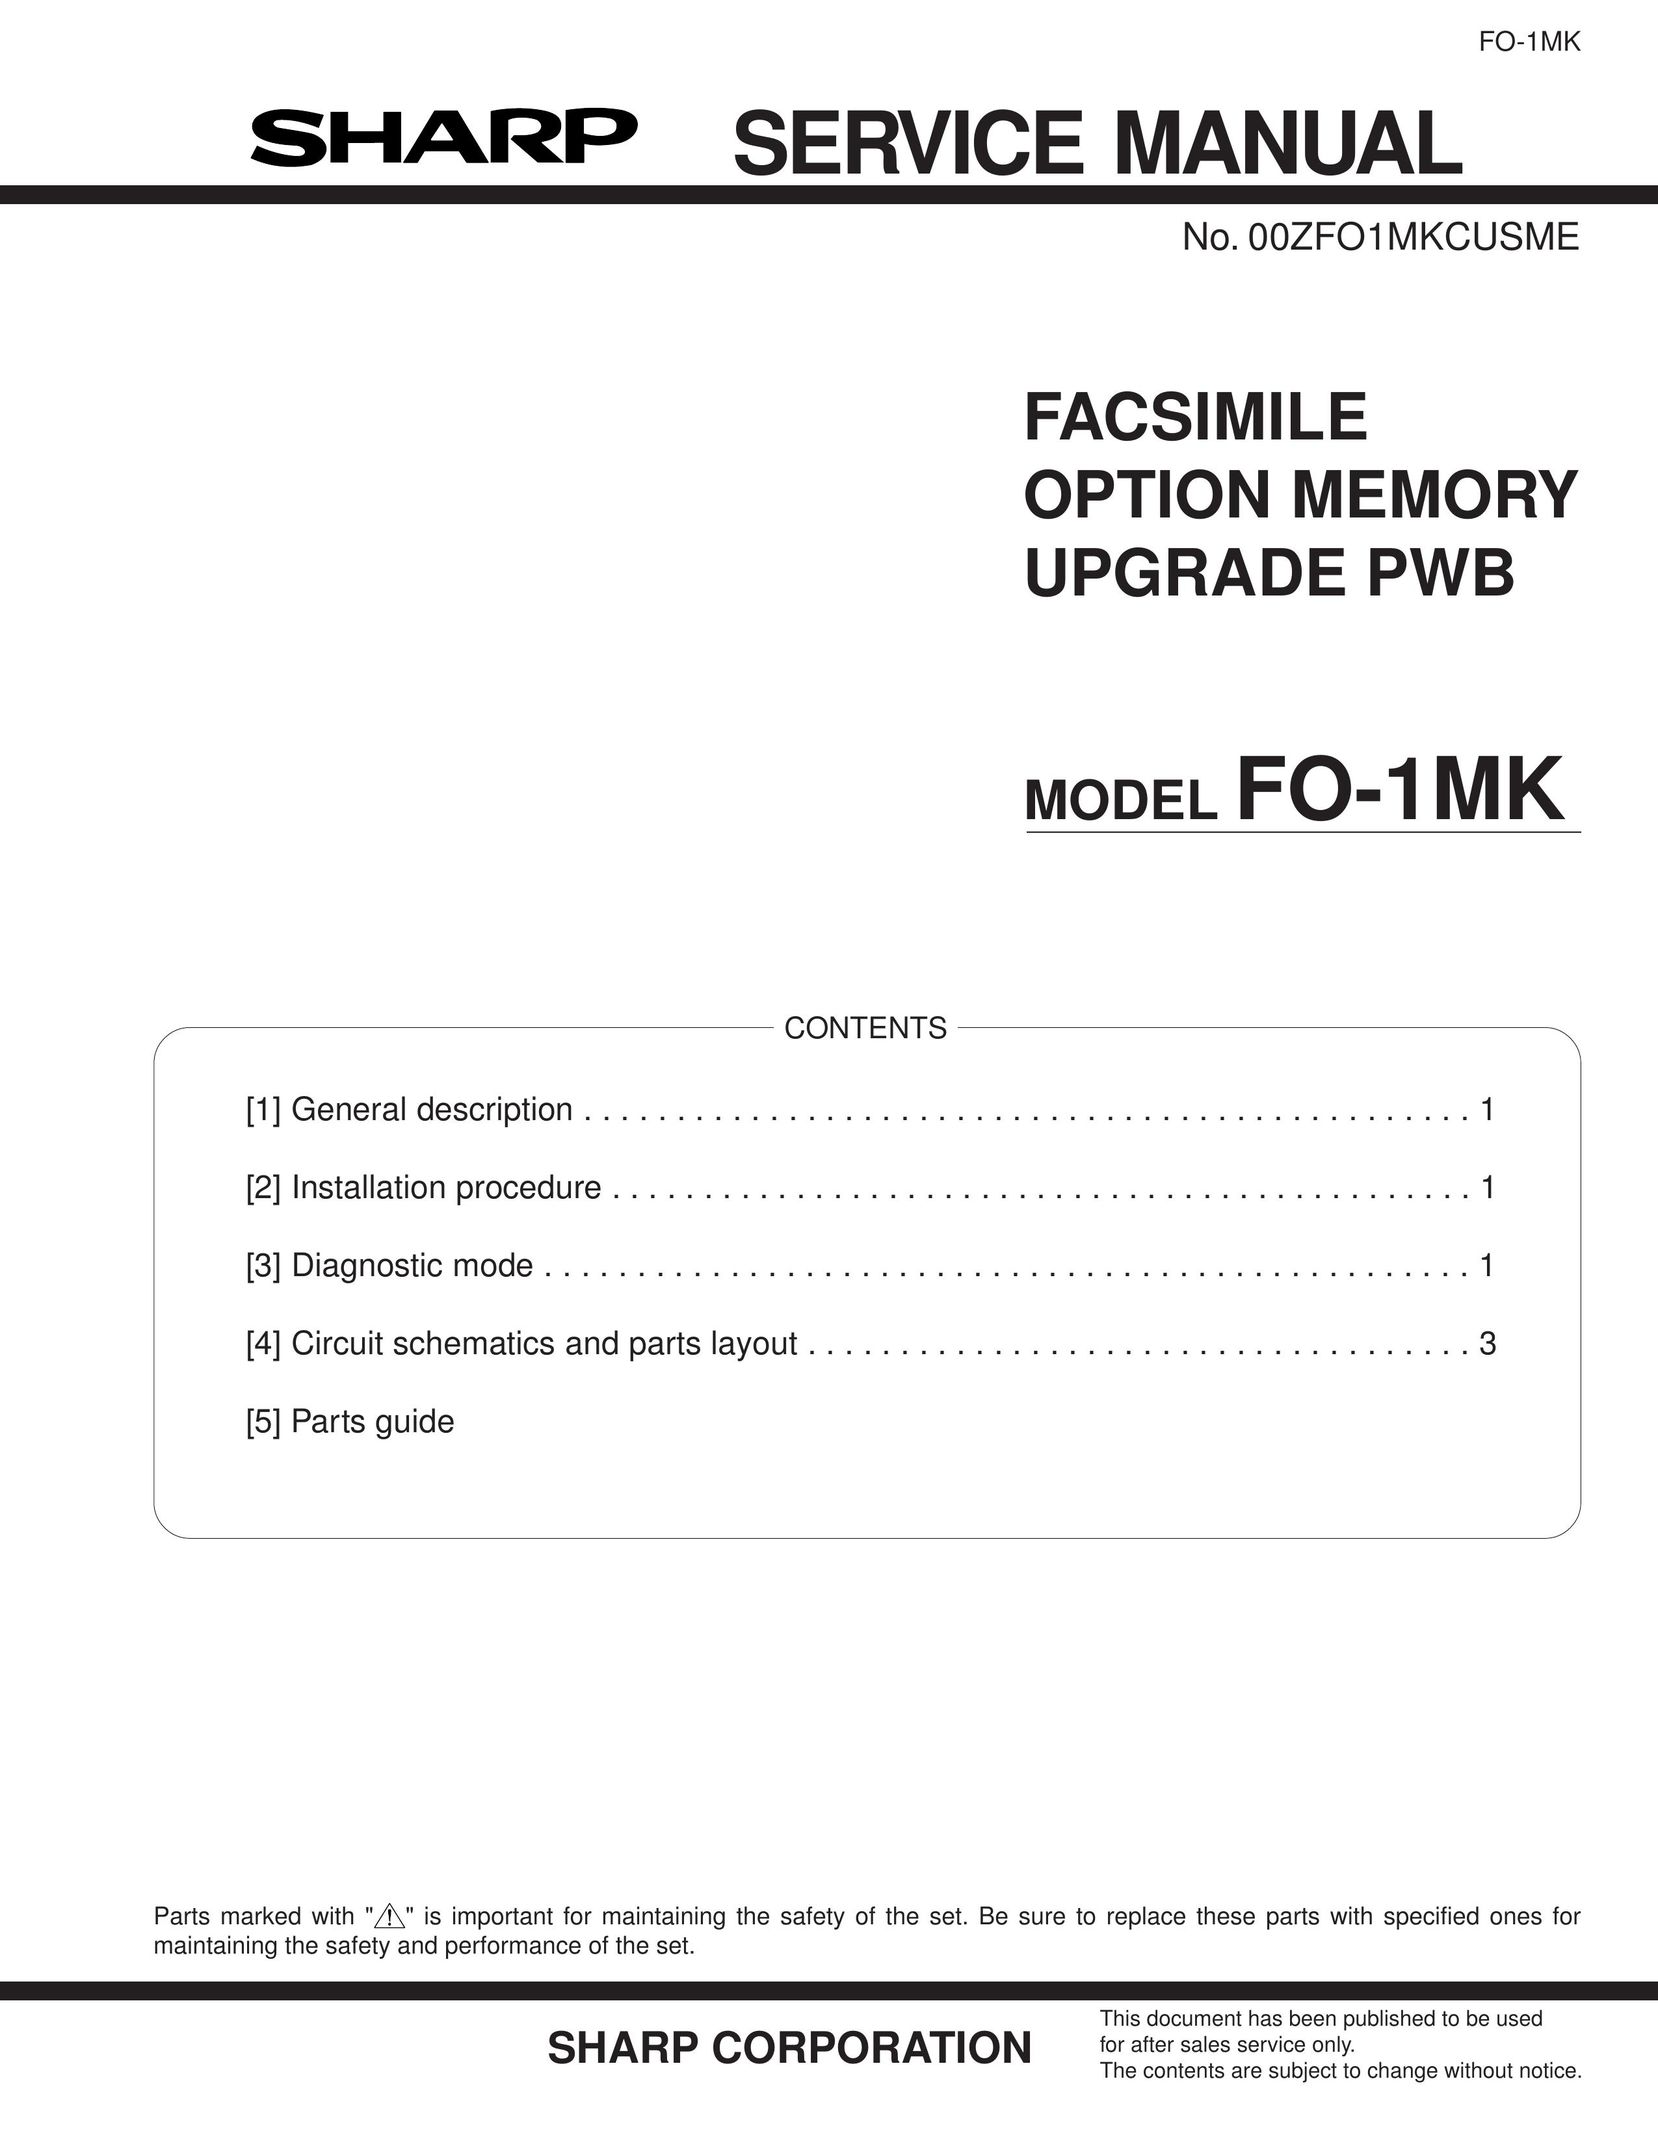 Sharp FO-1MK Fax Machine User Manual